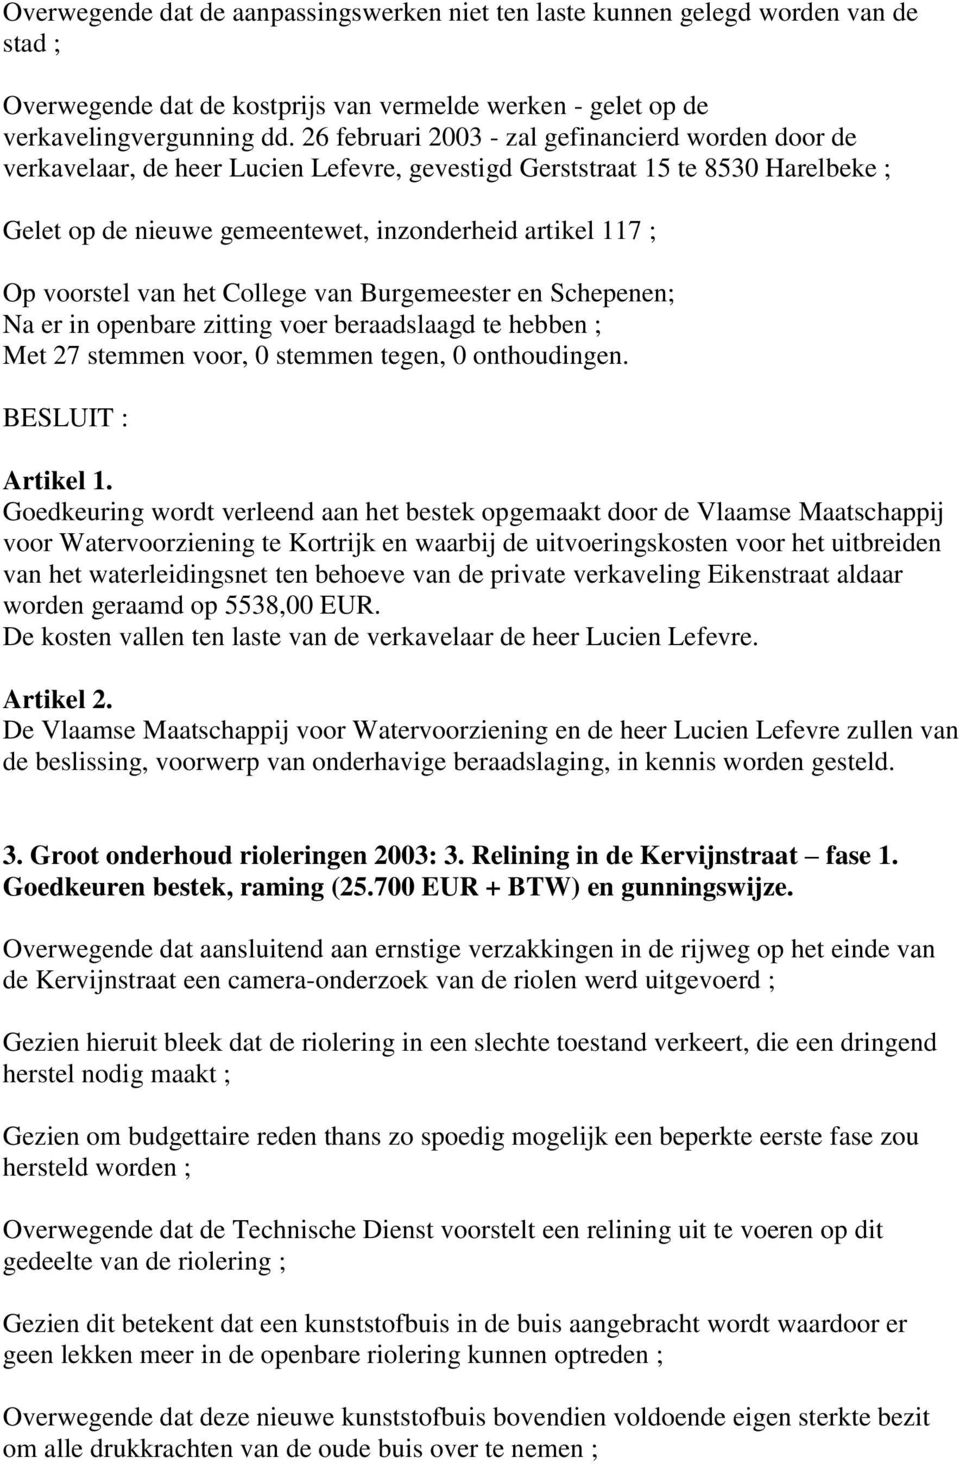 voorstel van het College van Burgemeester en Schepenen; Na er in openbare zitting voer beraadslaagd te hebben ; Met 27 stemmen voor, 0 stemmen tegen, 0 onthoudingen. BESLUIT : Artikel 1.